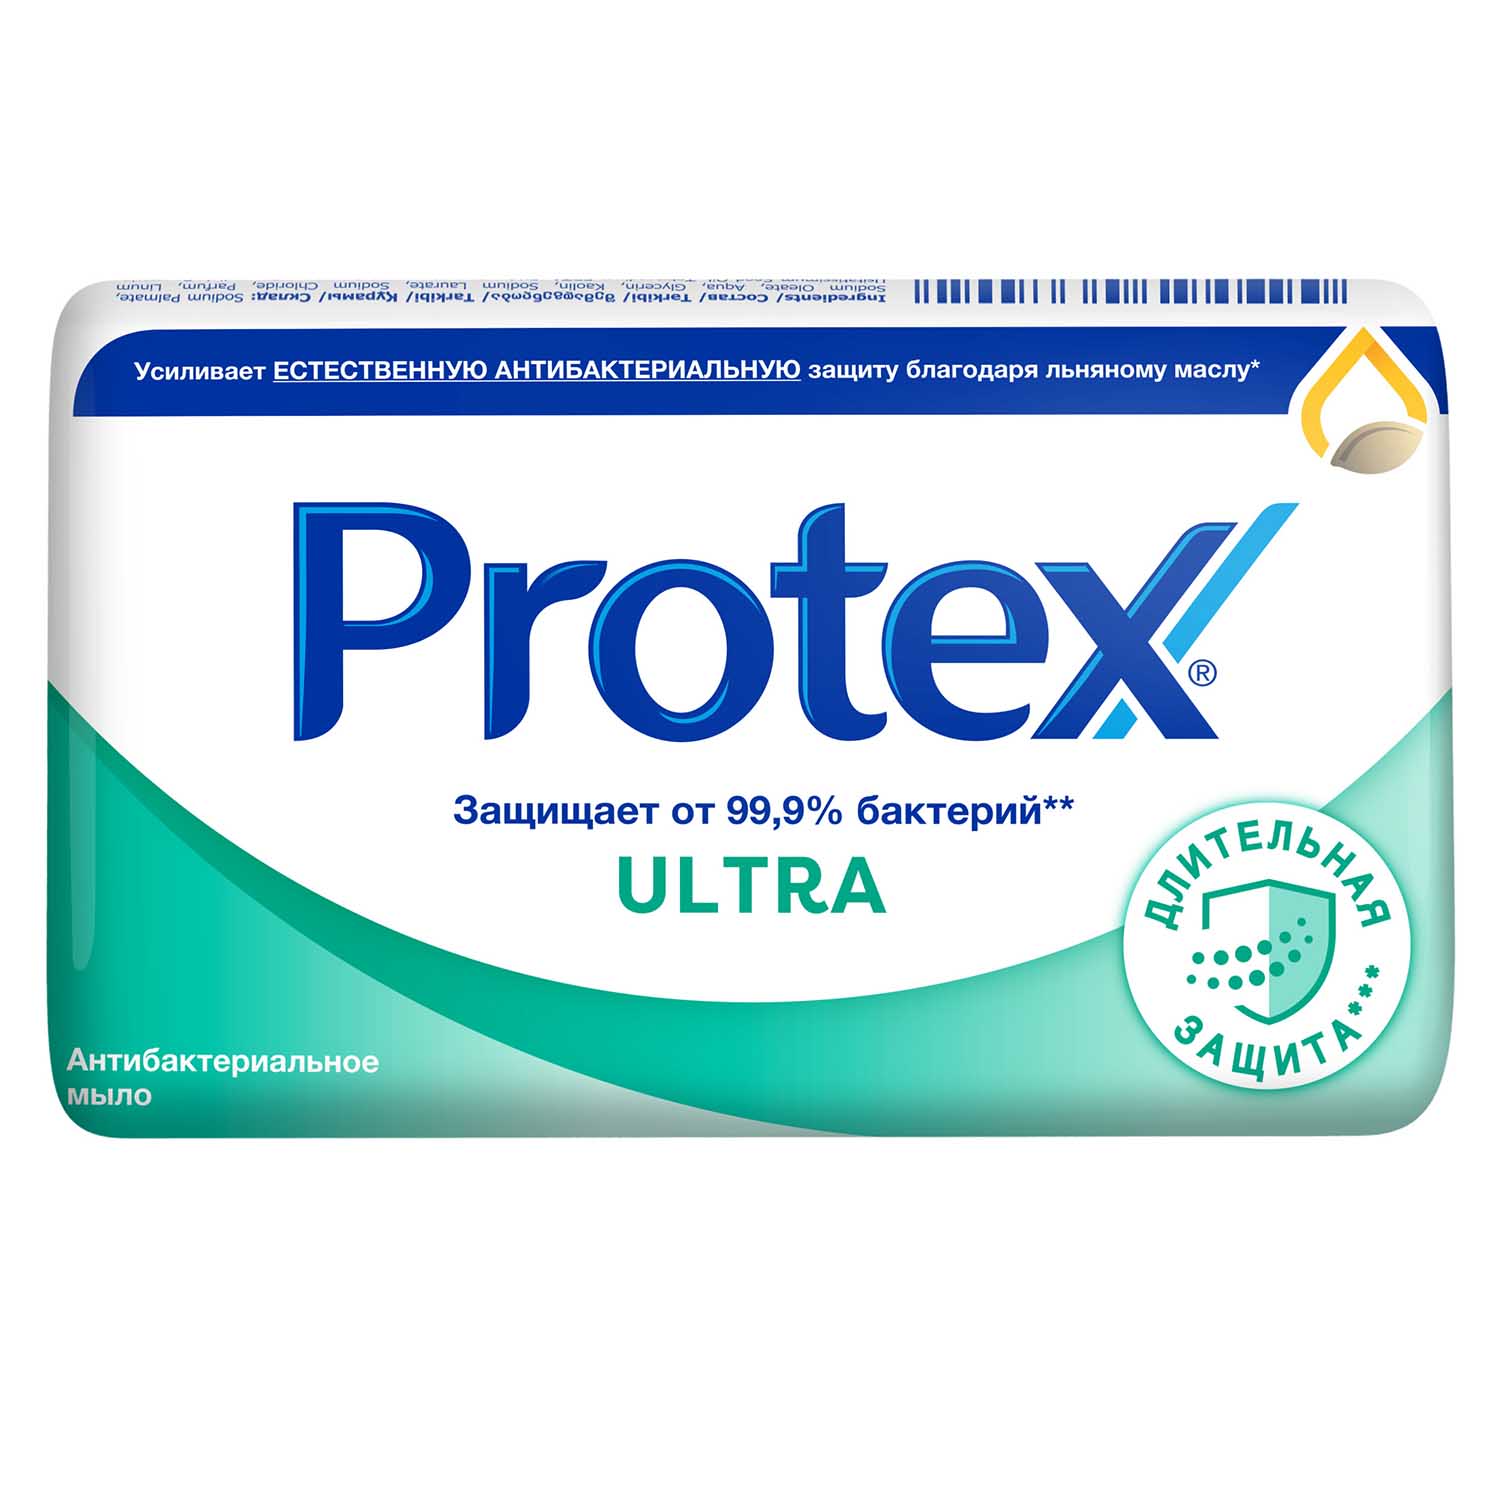 Мыло туалетное Protex Ultra Антибактериальное с льняным маслом, 90 гр мыло туалетное protex ultra антибактериальное с льняным маслом 90 гр